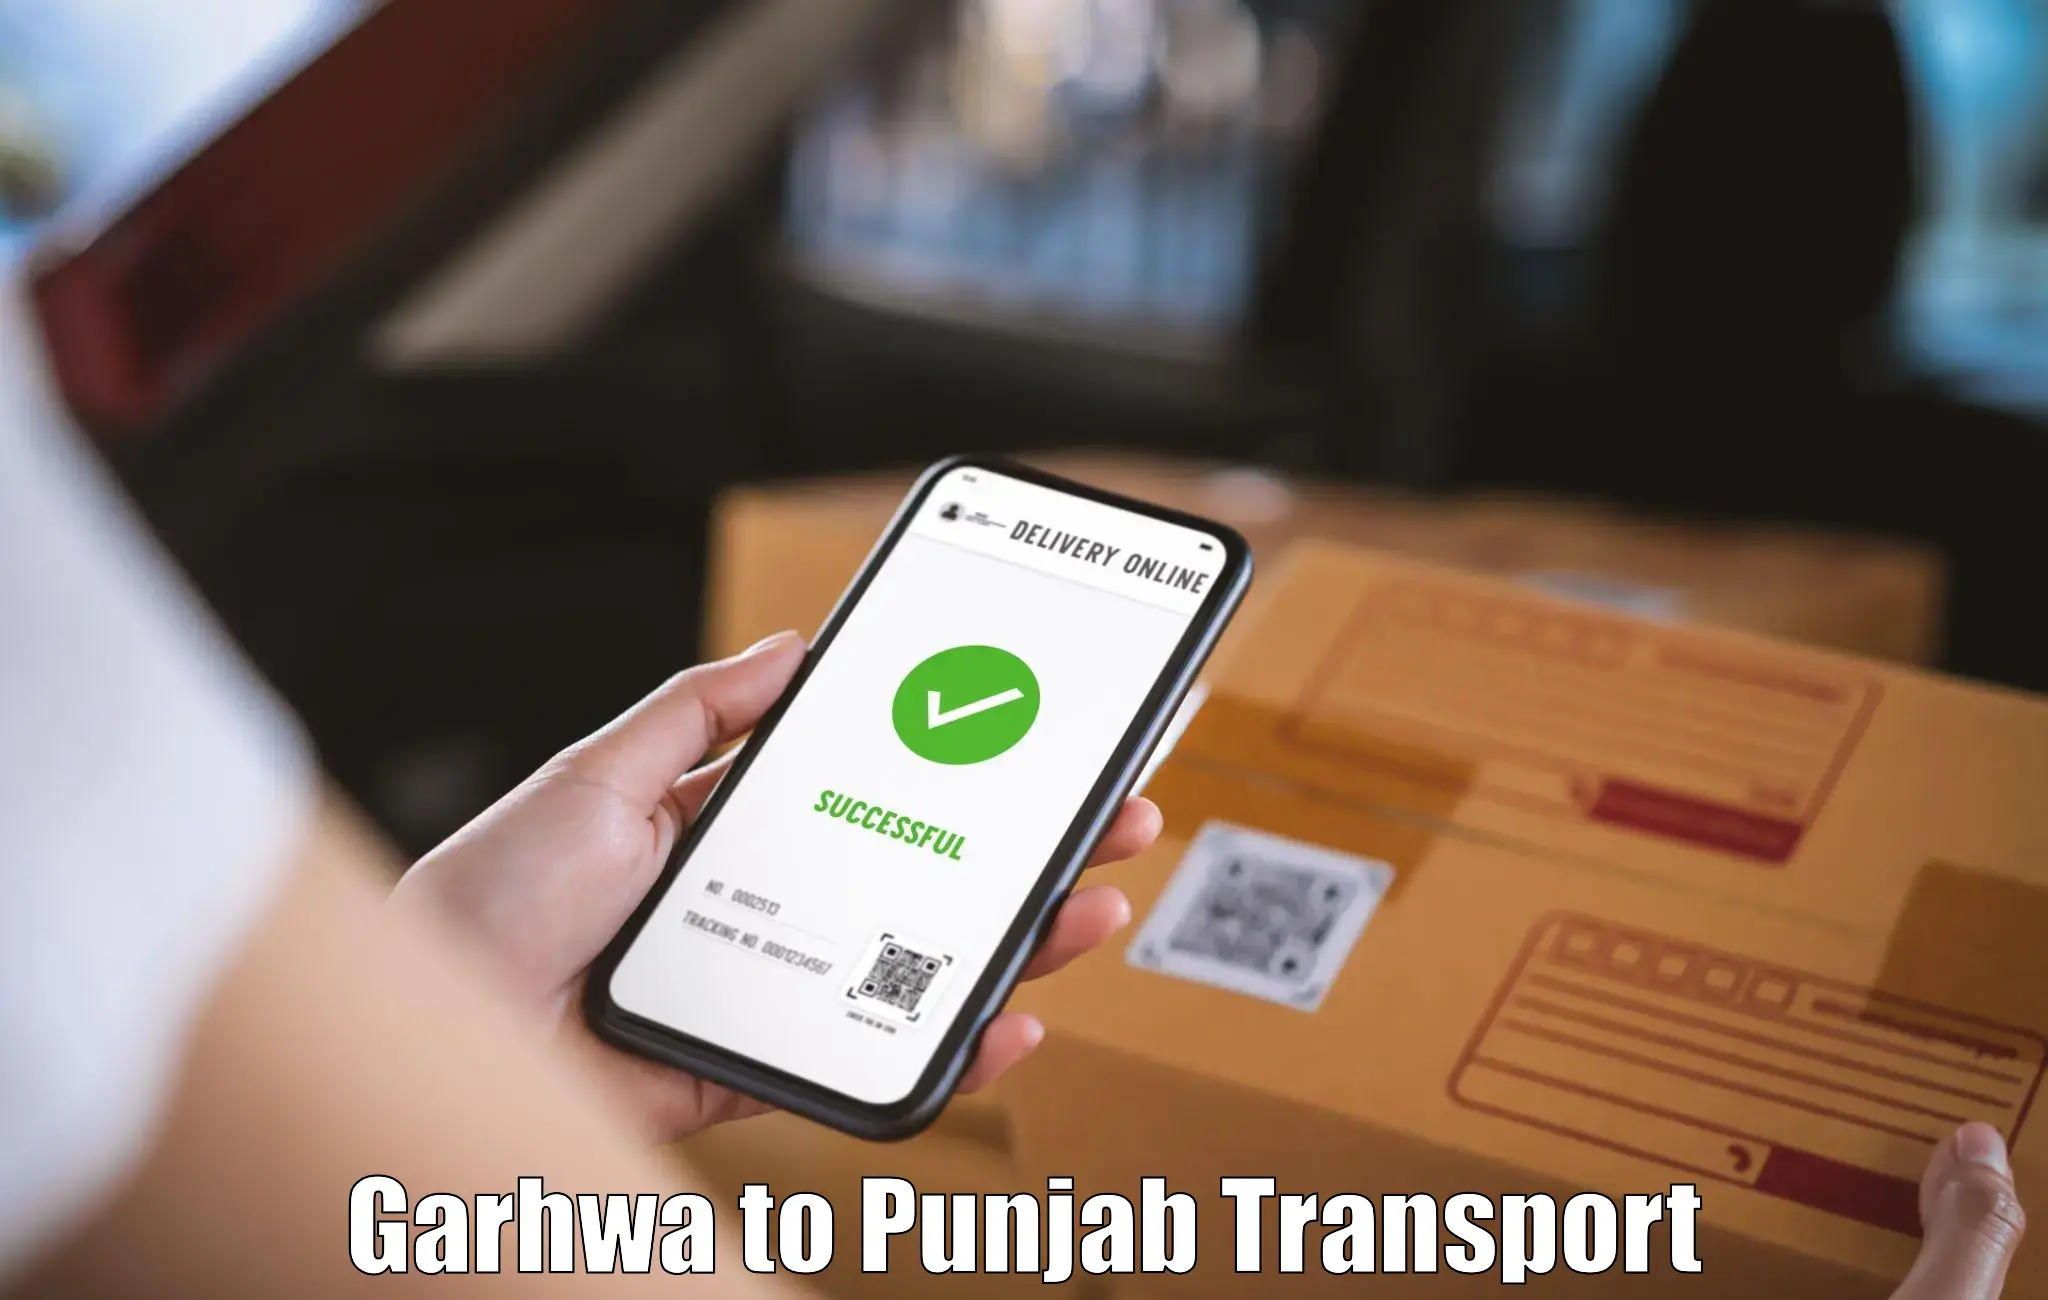 Road transport online services Garhwa to Muktsar